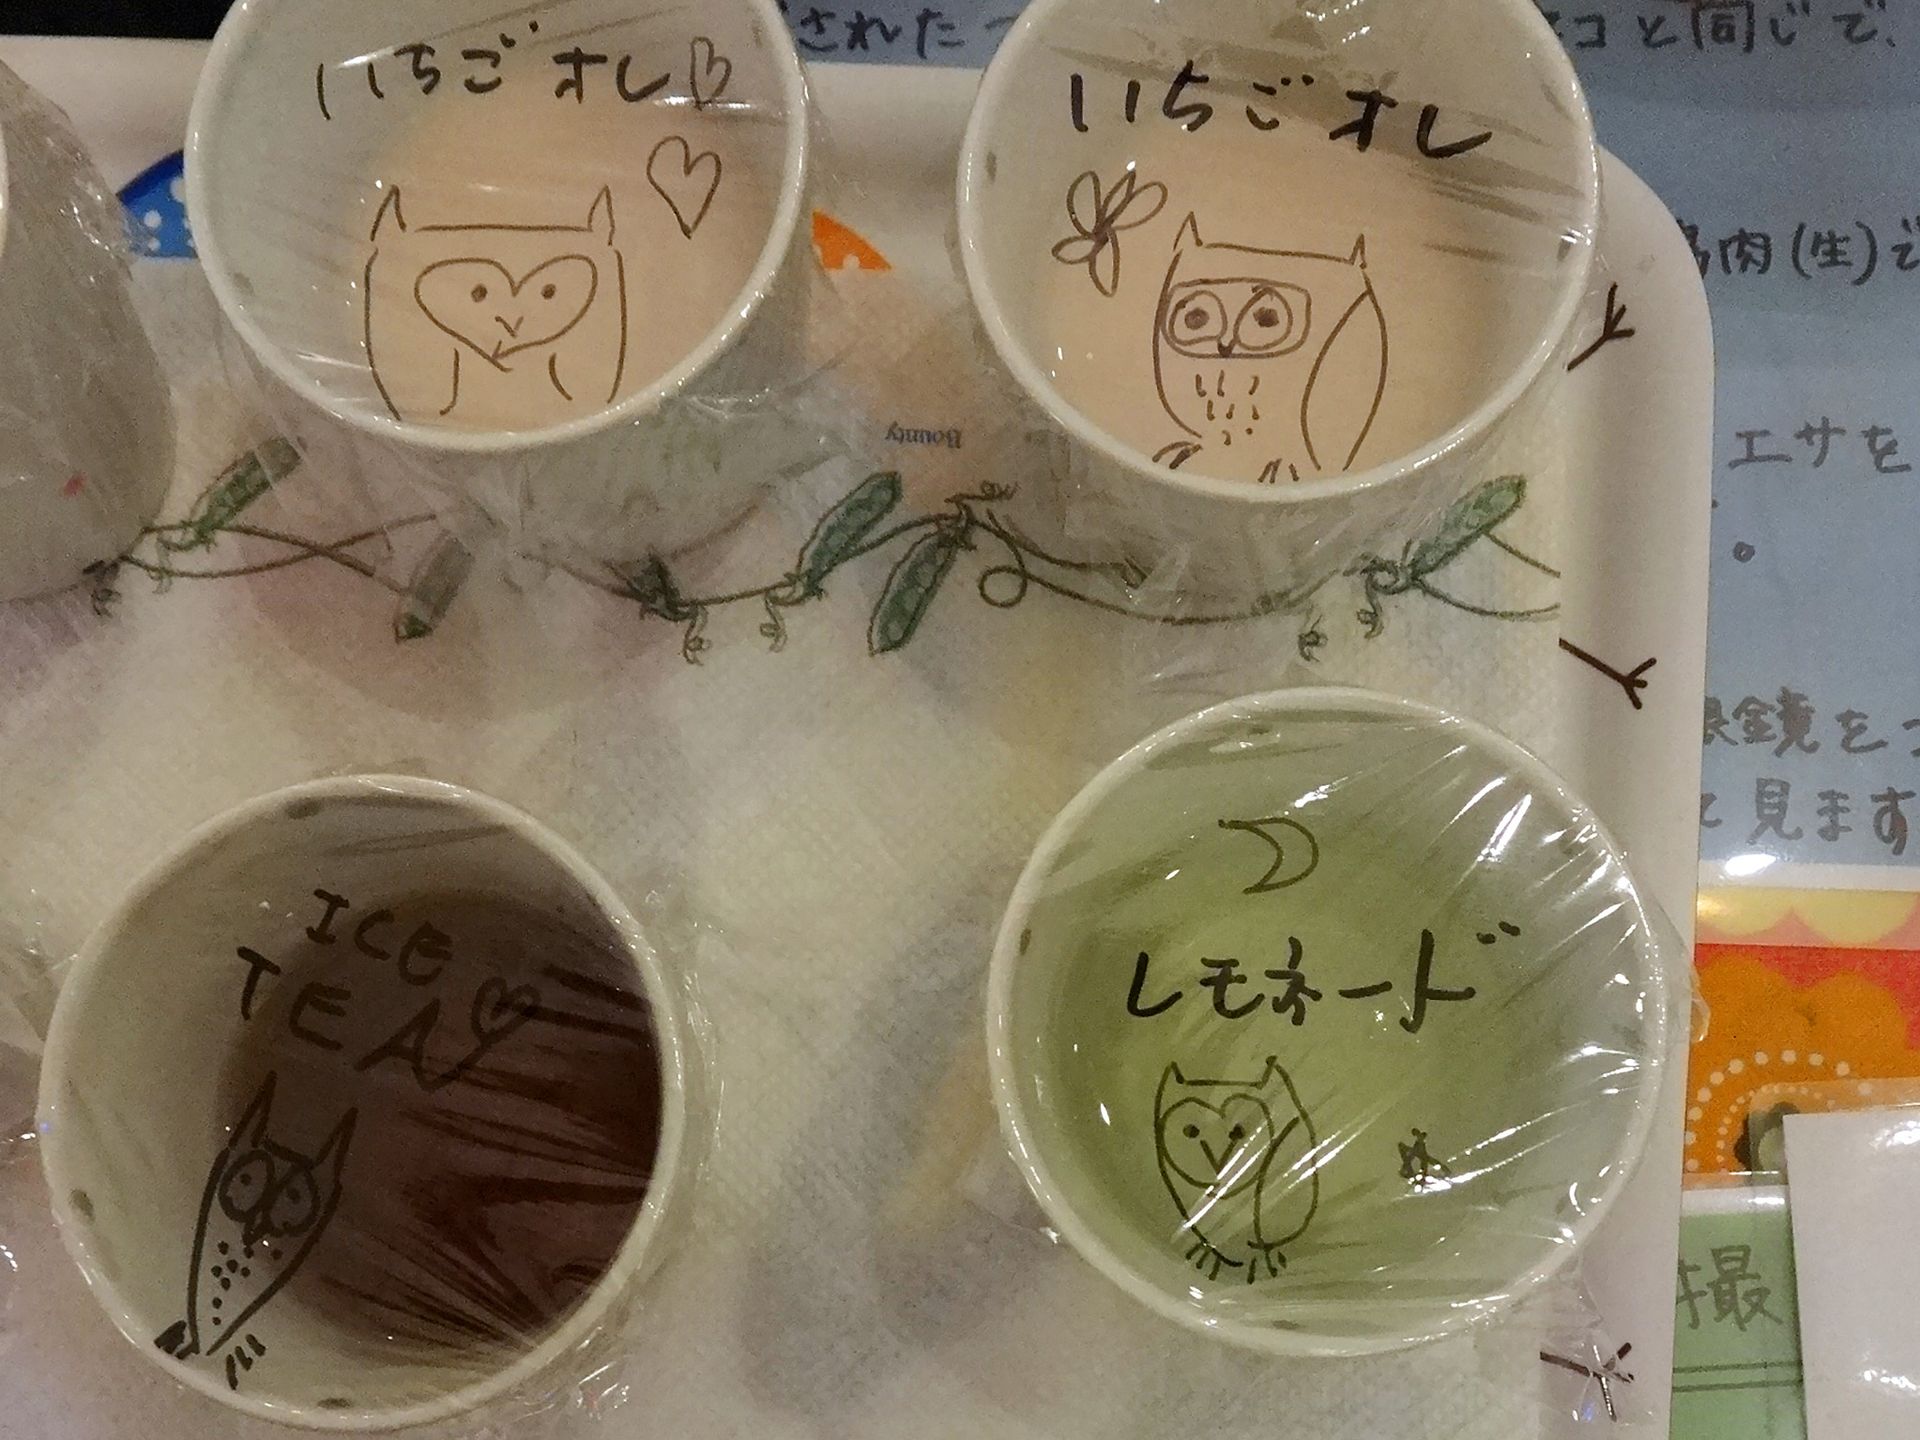 日本动物主题咖啡店盛行 顾客与动物亲密互动